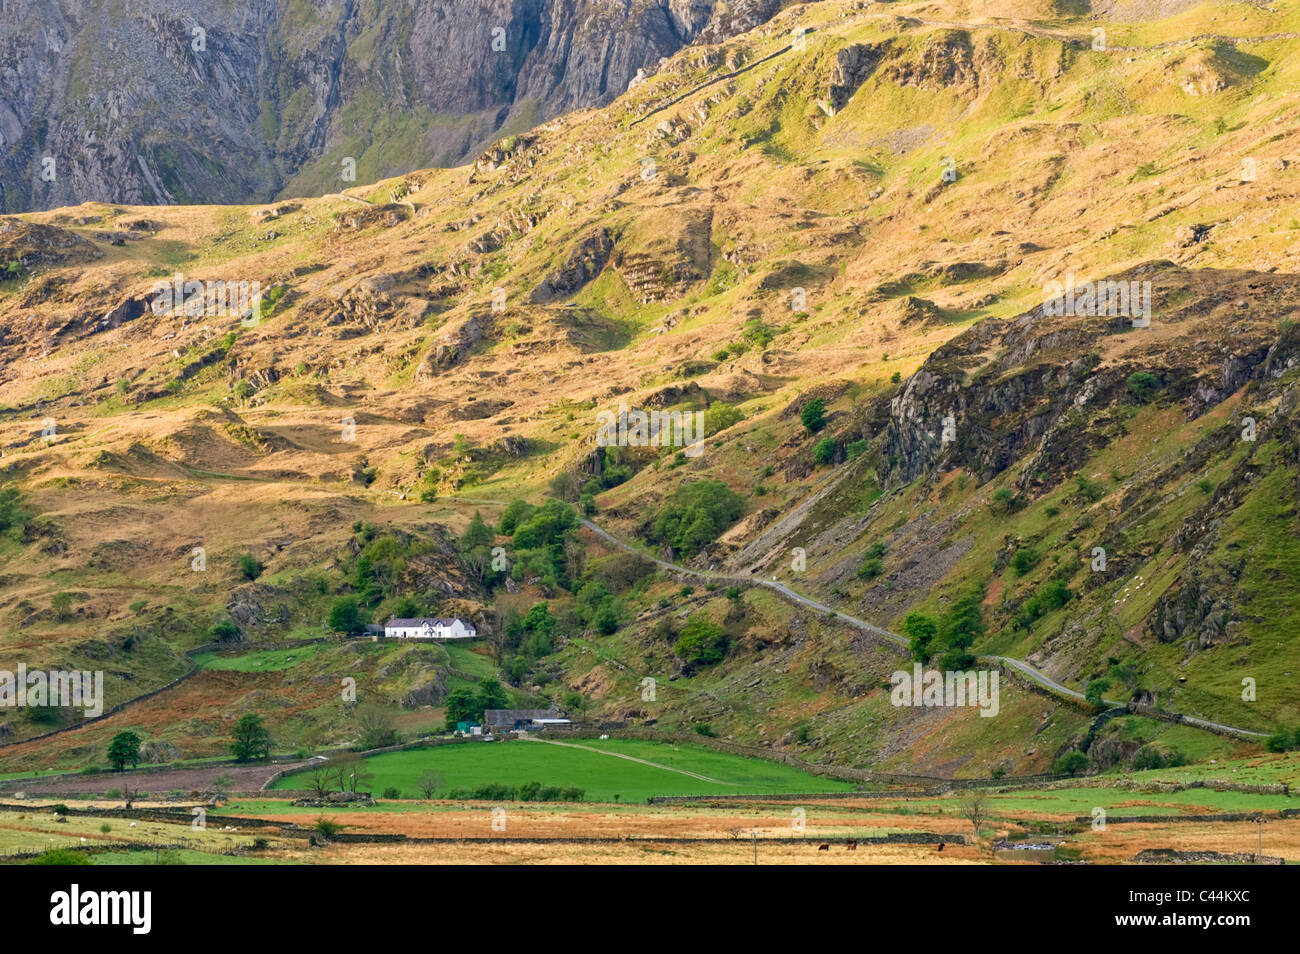 Le Nant Ffrancon Valley soutenue par Cwm Idwal, Parc National de Snowdonia, Gwynedd, au nord du Pays de Galles, Royaume-Uni Banque D'Images